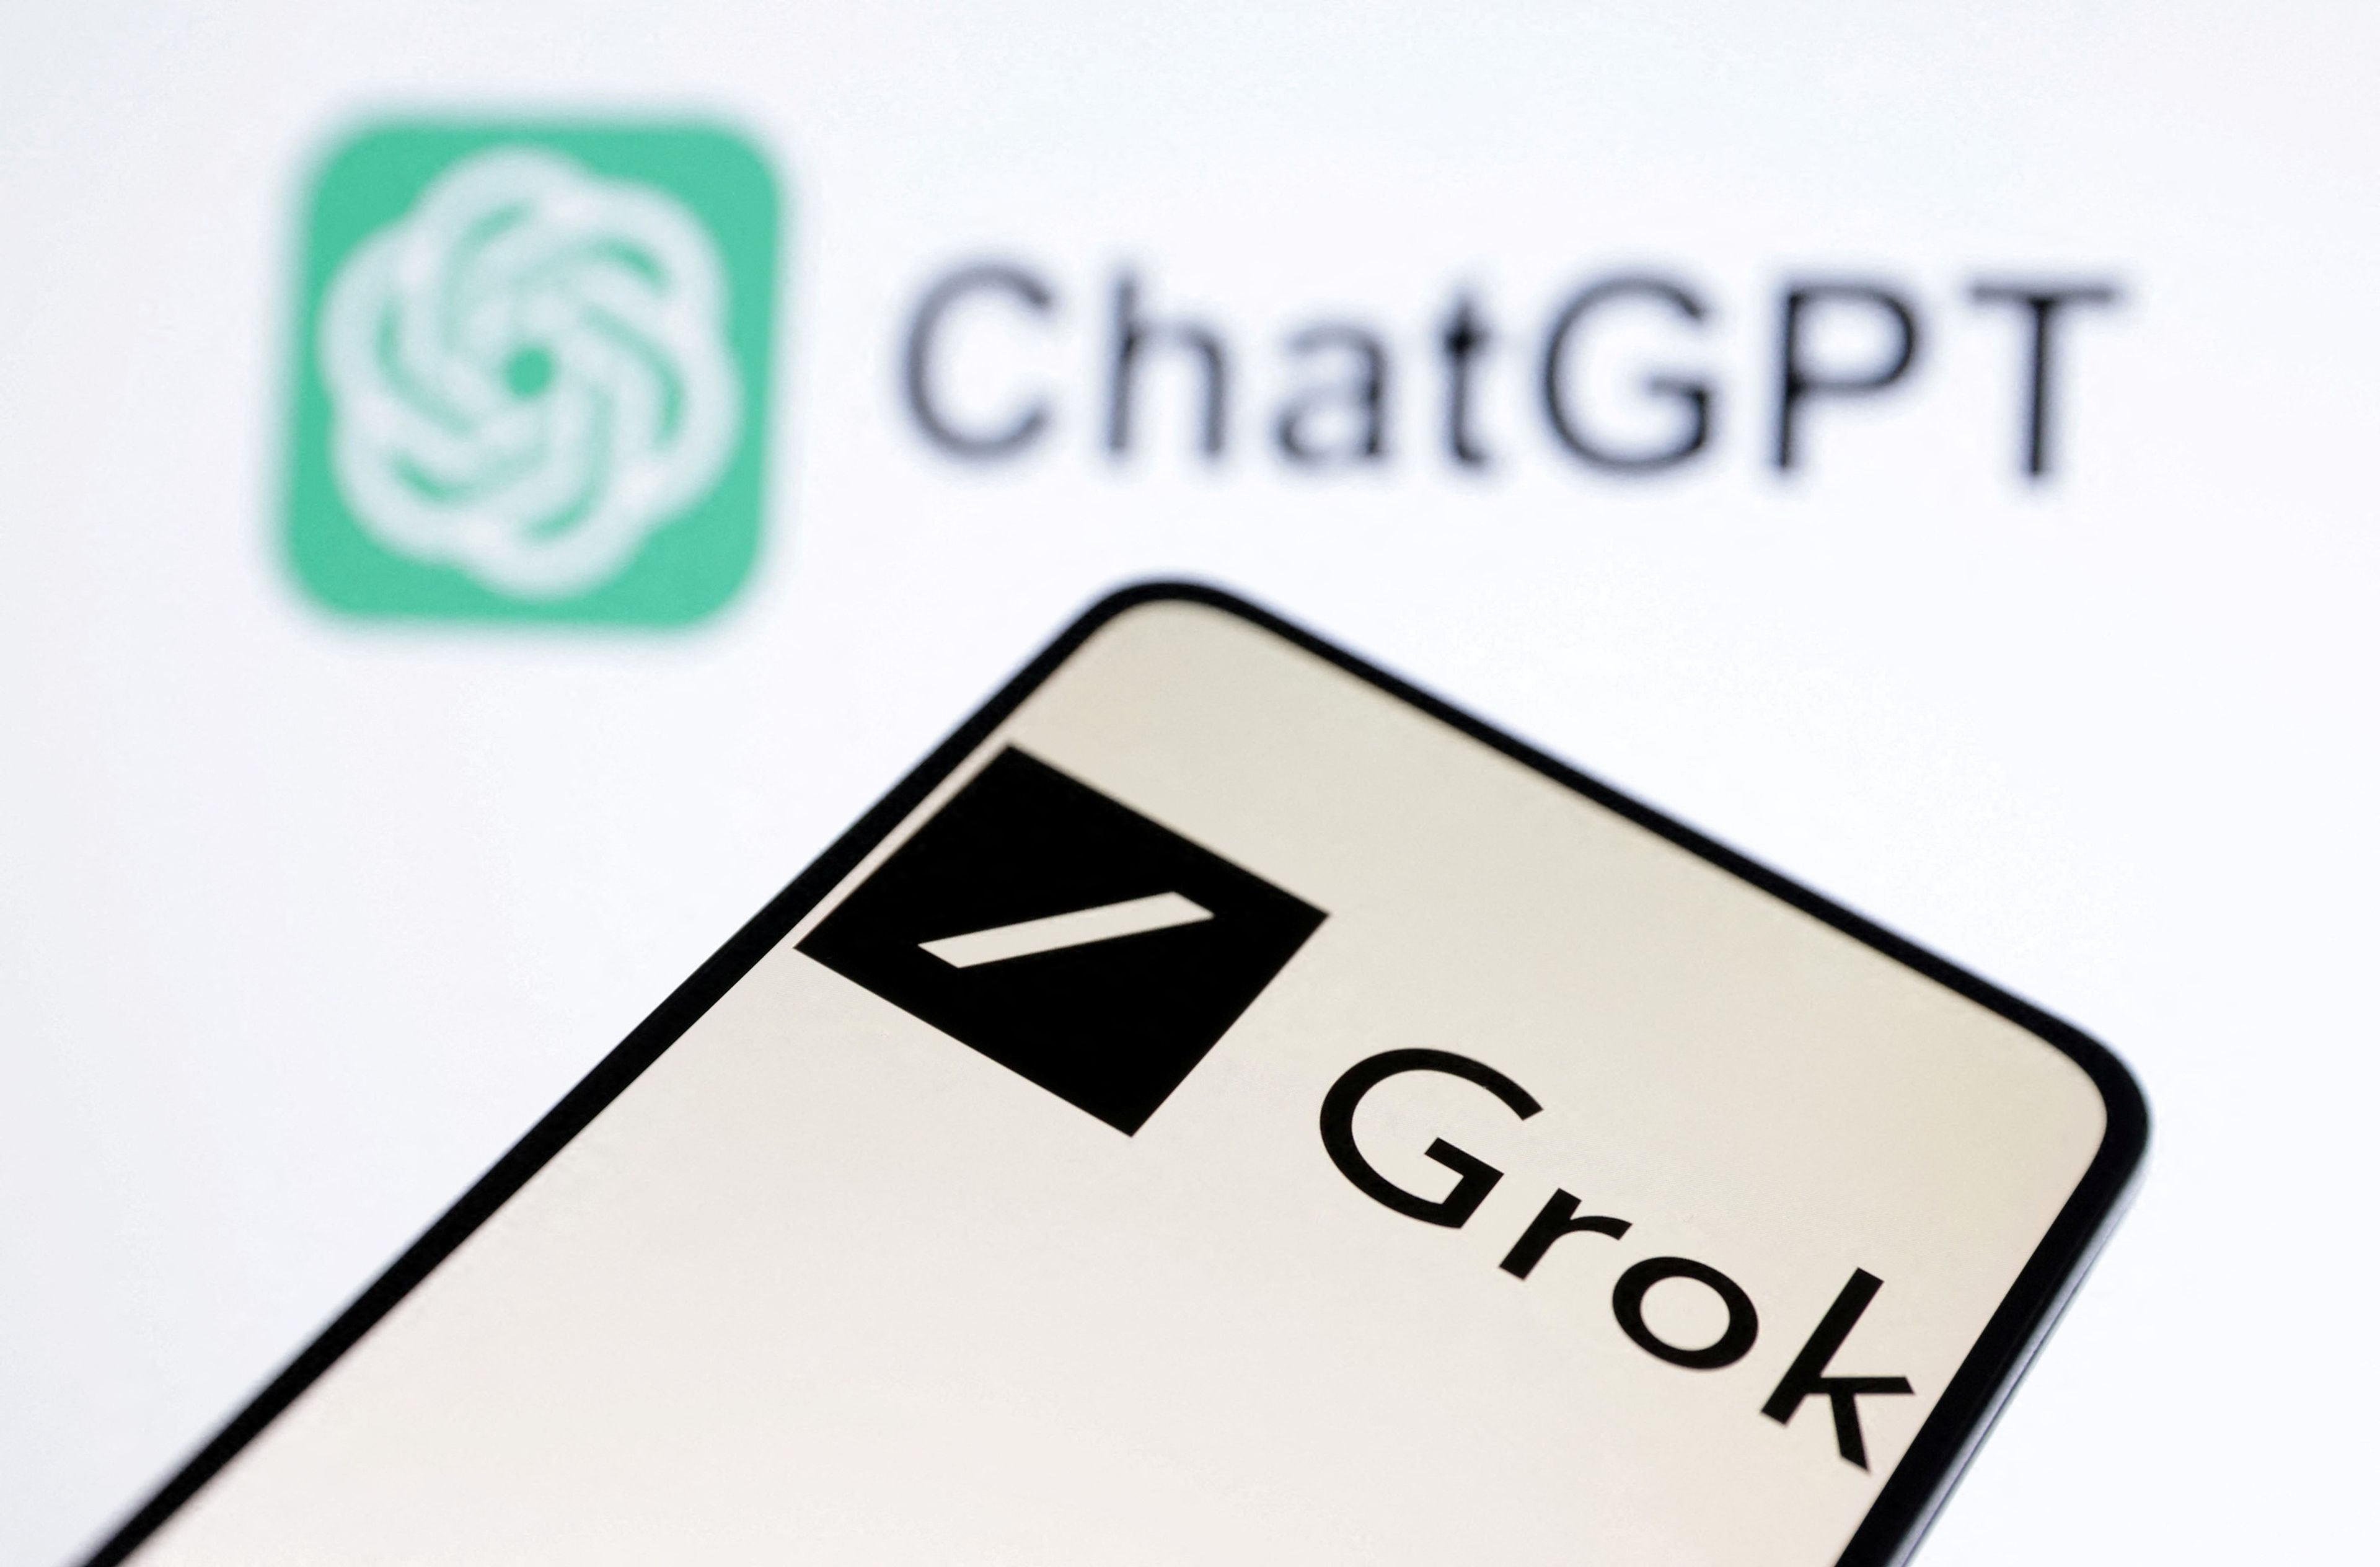 Un móvil que muestra la imagen del logo de Grok, el chatbot de Elon Musk, frente al logo de ChatGPT.